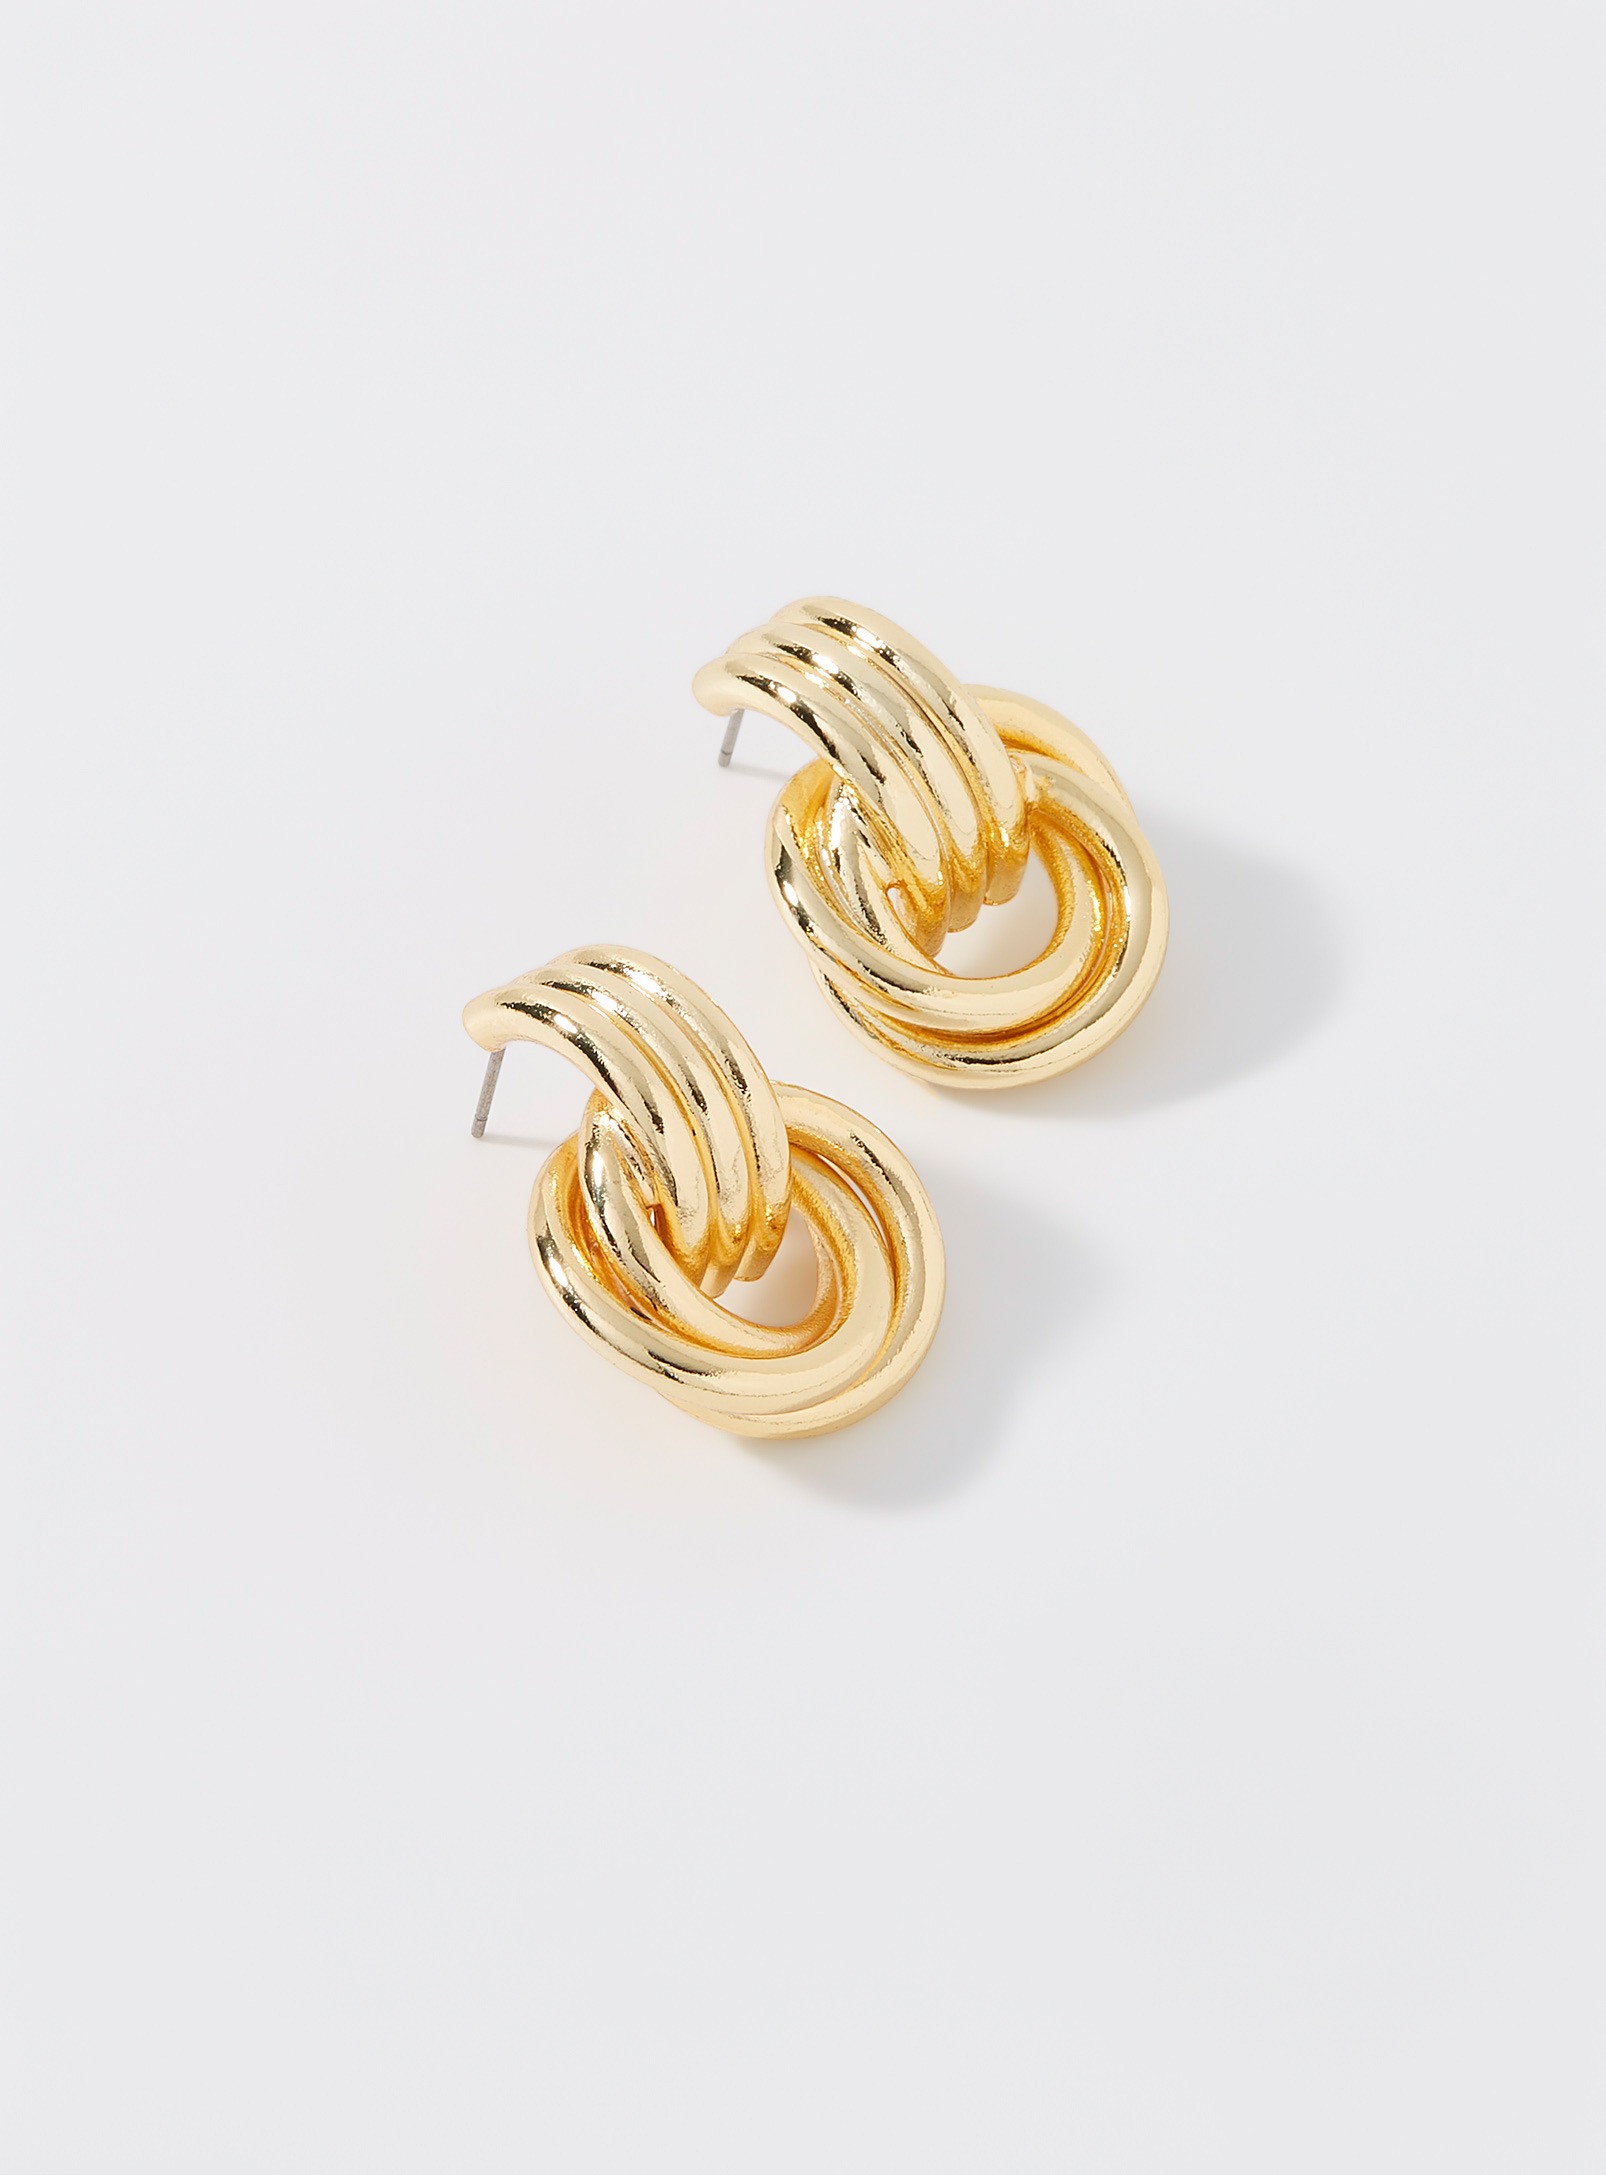 Simons - Women's Interlaced-like gold earrings